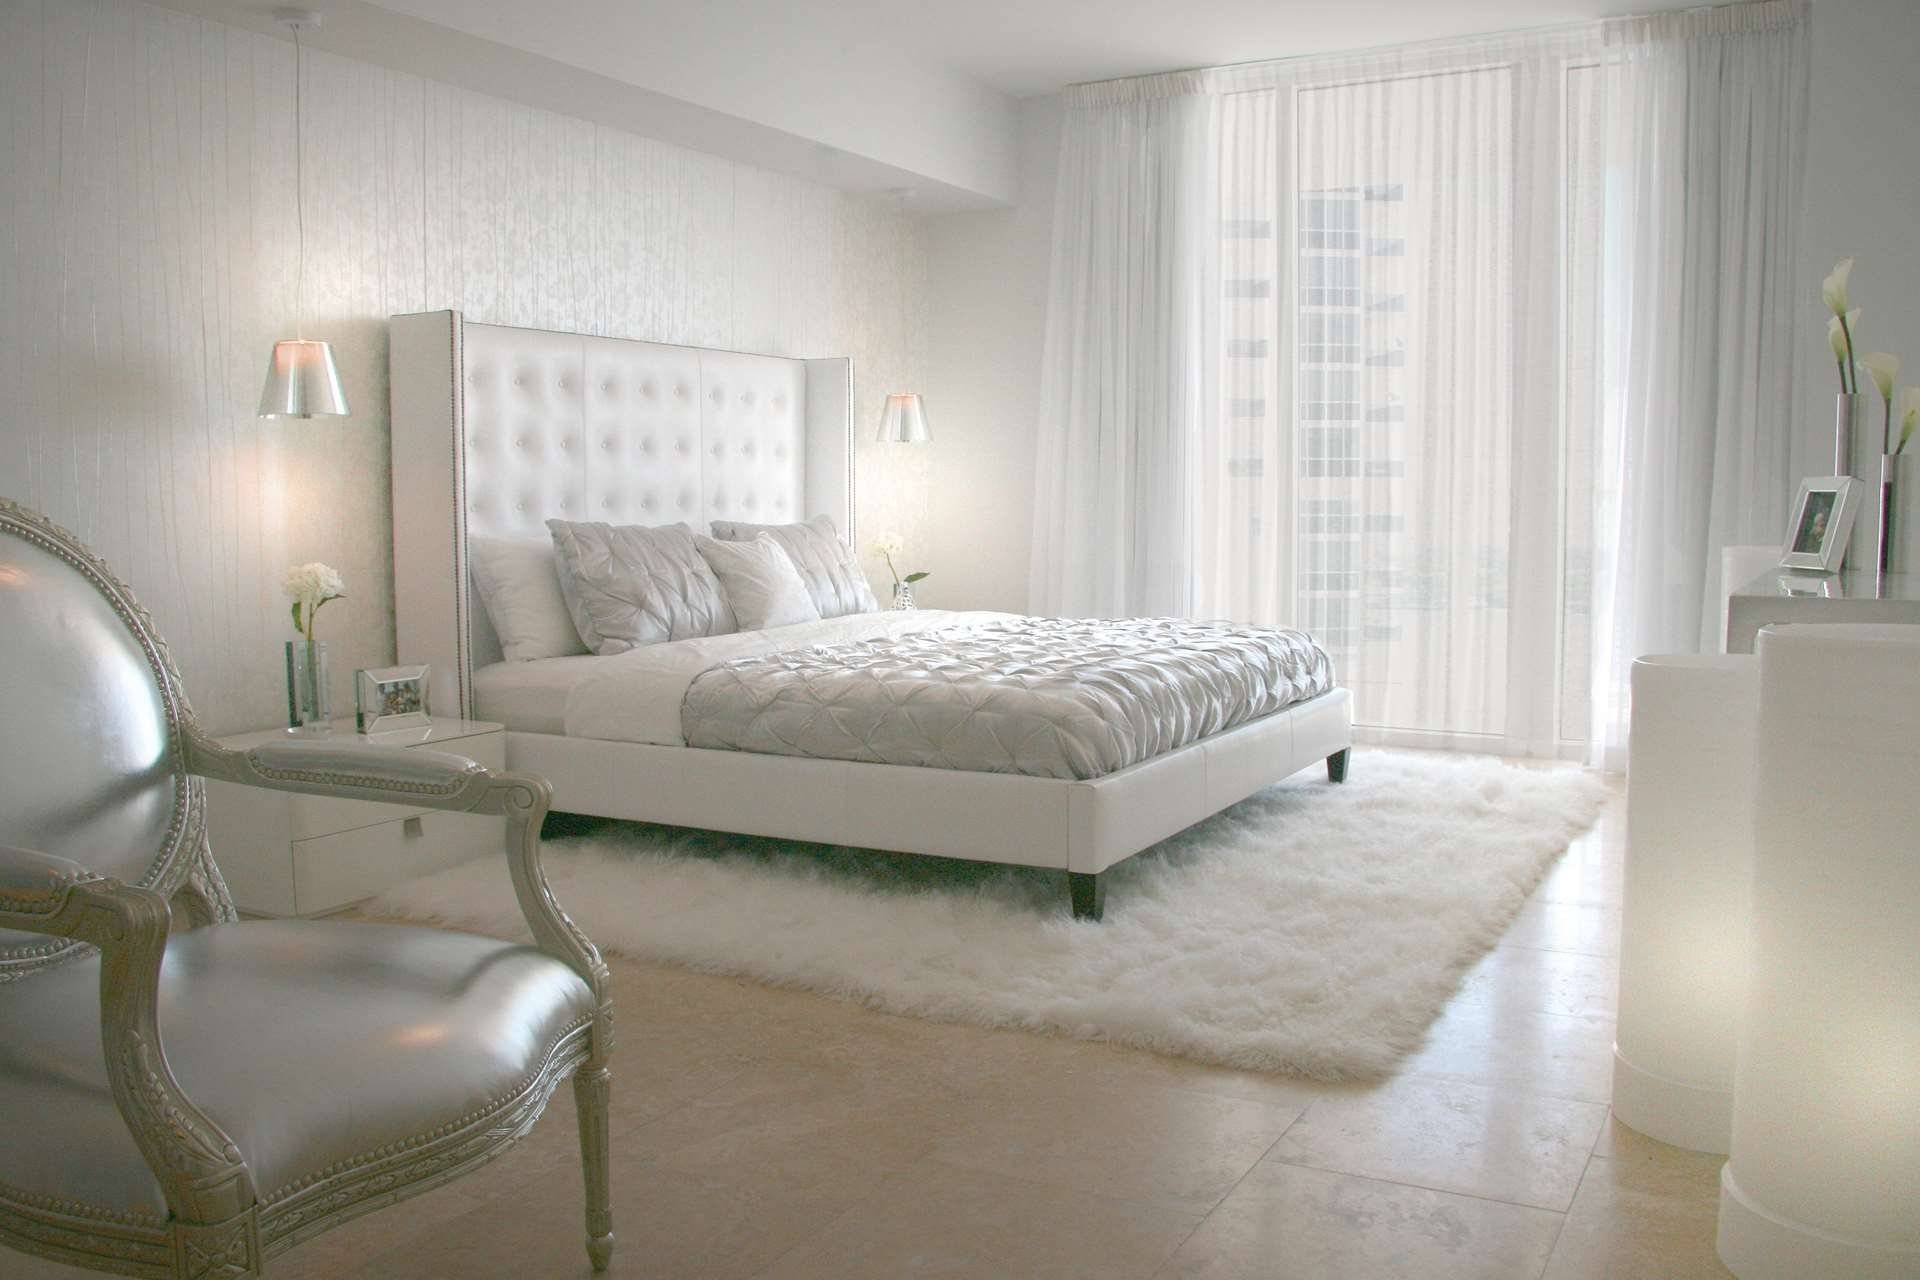 Преимущества белой мебели для спальни, основные предметы гарнитура